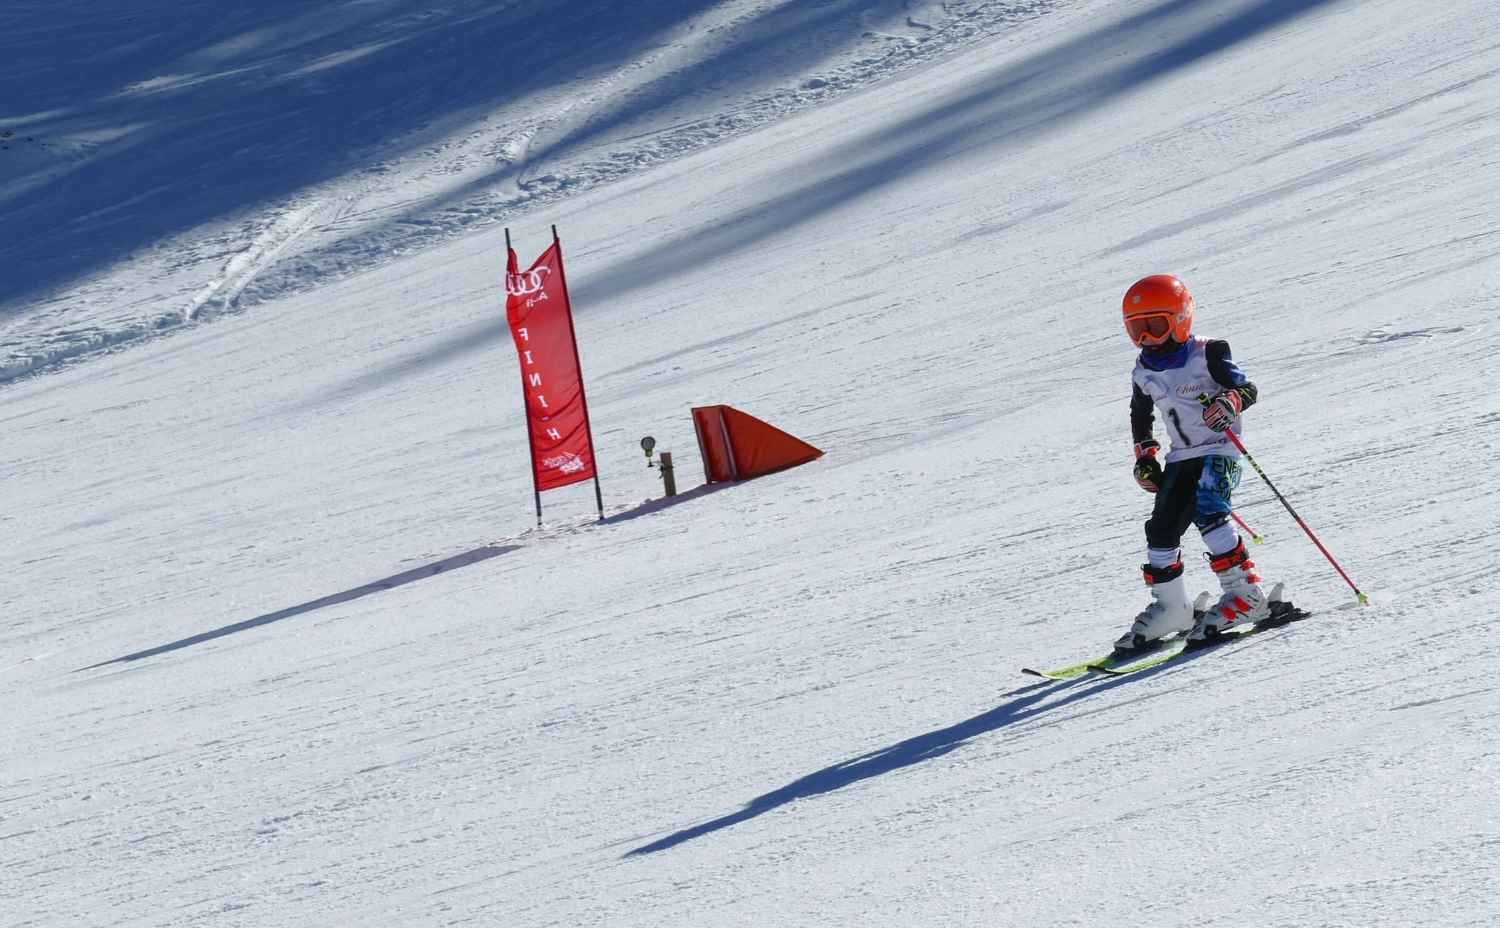 Alleine und sicher durchs Ziel fuhr auch der jüngste Teilnehmer, der erst fünfjährige Krystof Cechura von Sokol Spicak.